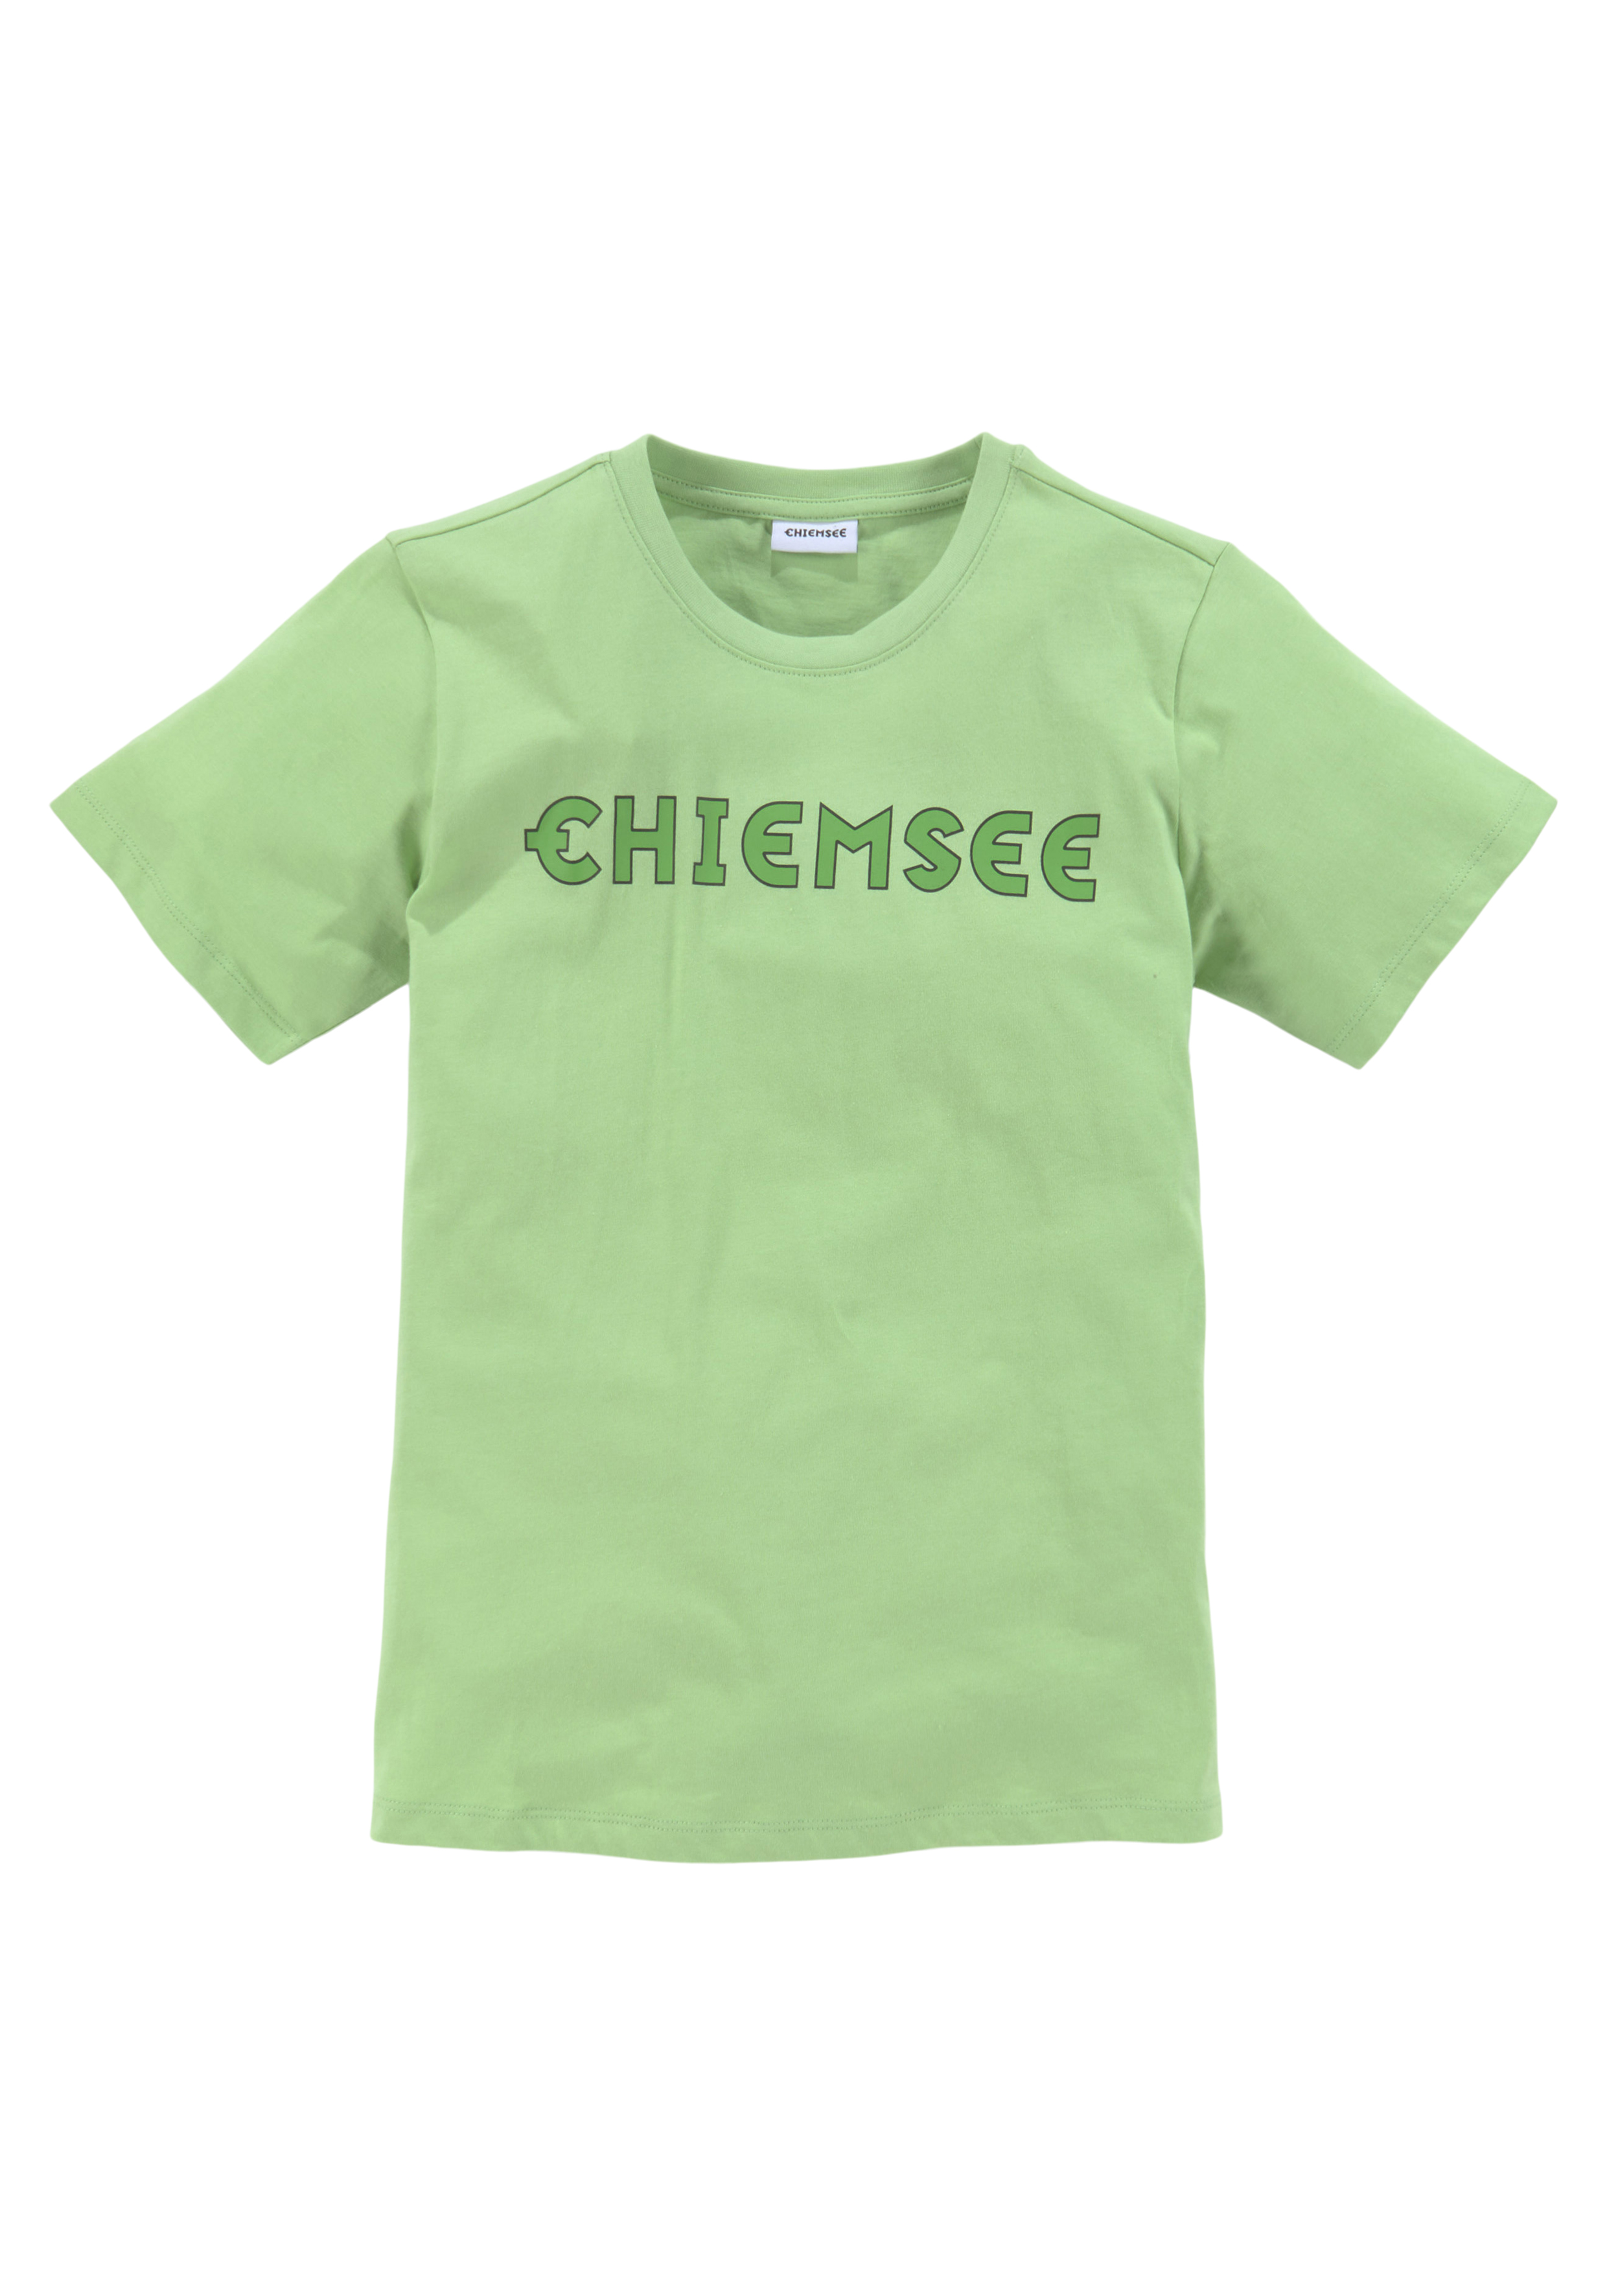 Chiemsee - günstige Mode shoppen online